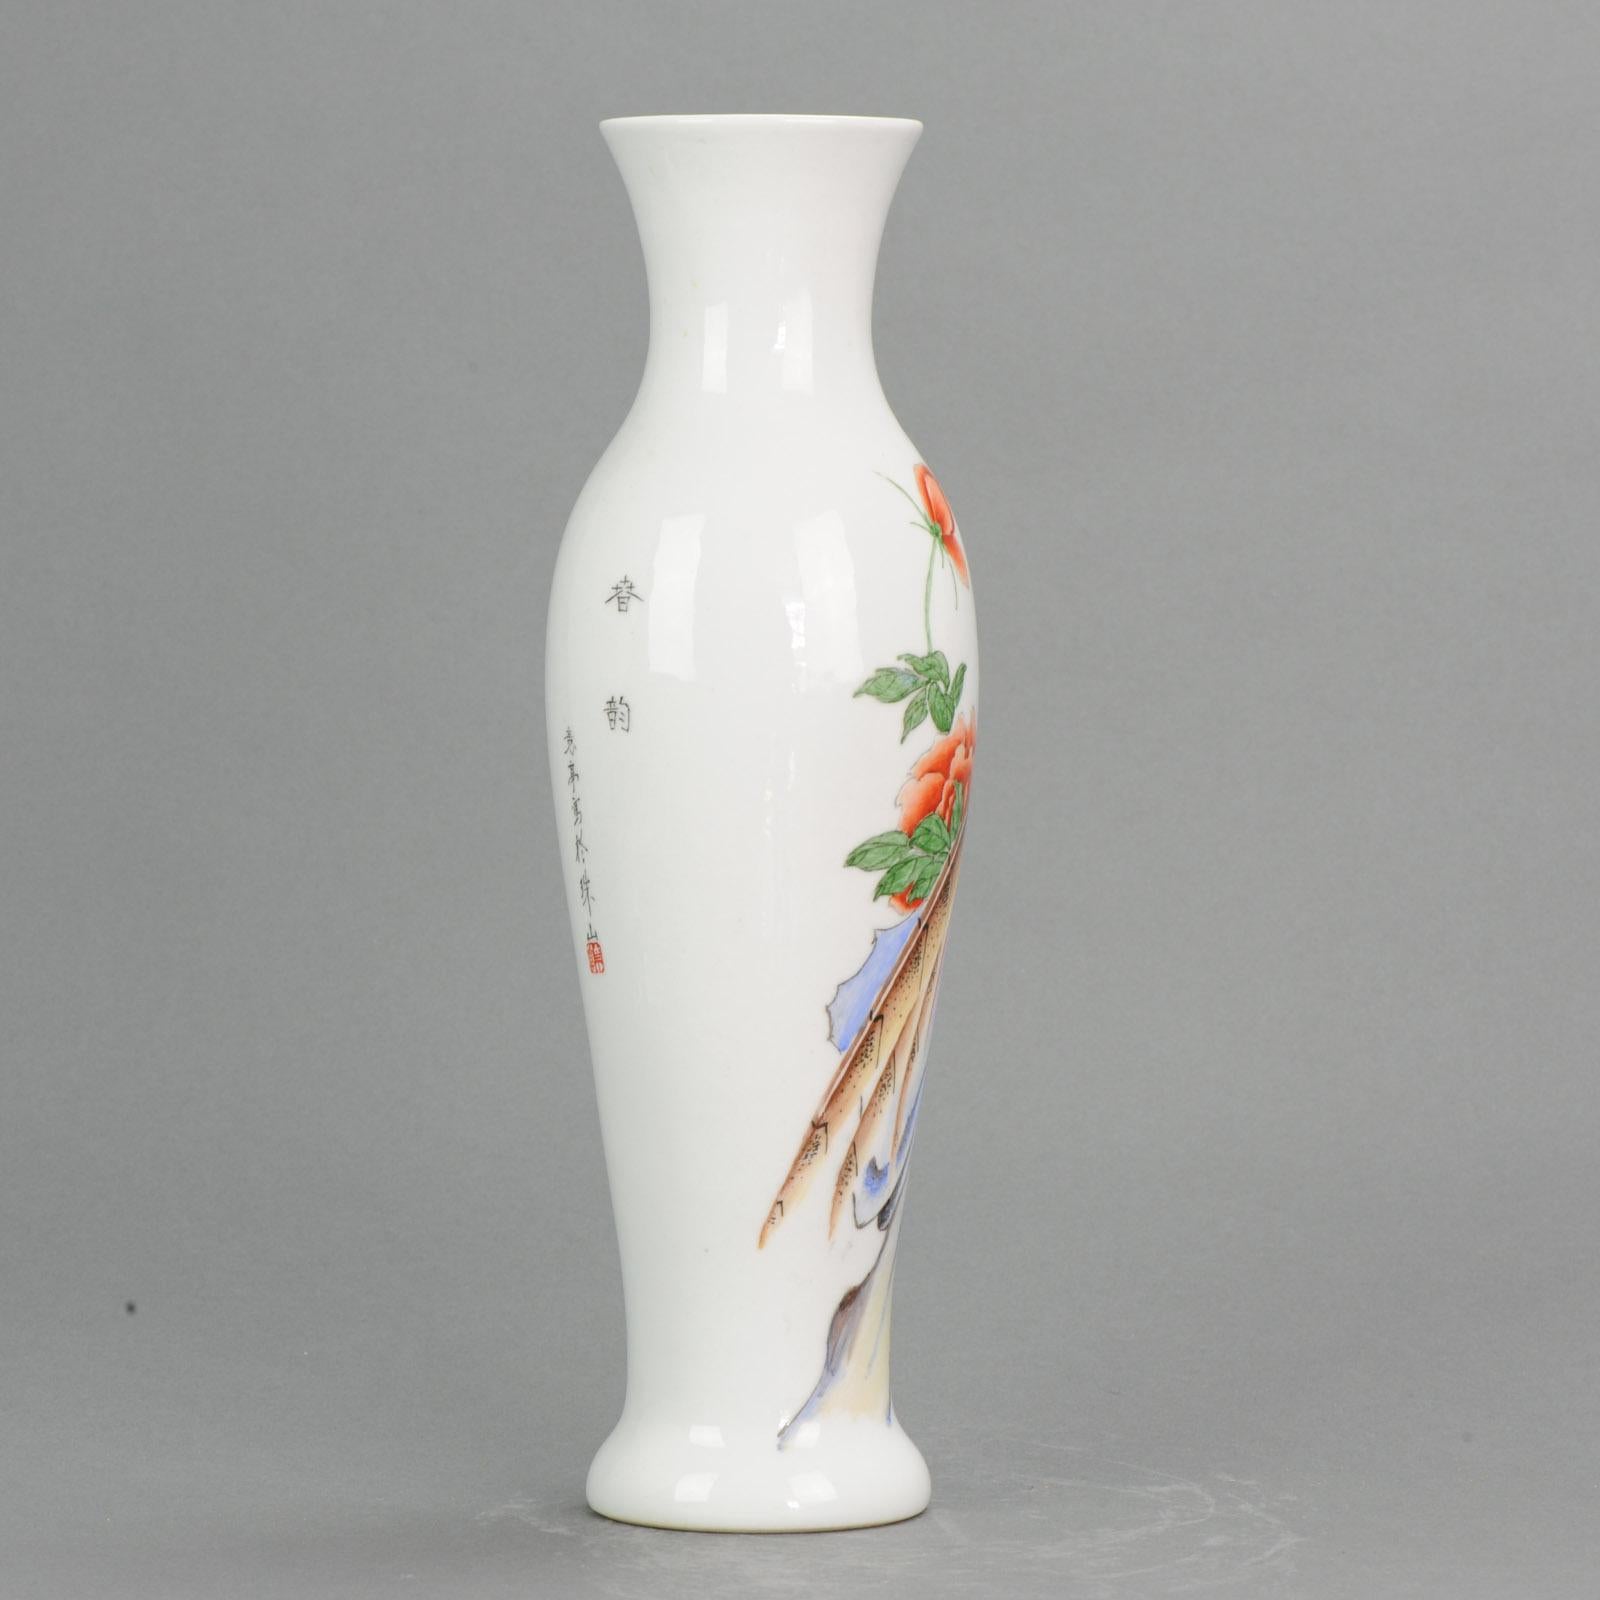 Très beau vase, belle décoration. Un style moderne inhabituel

Acheté à Hong Kong en 1992Très beau vase avec une superbe décoration florale.

Informations complémentaires :
MATERIAL : Chine
Région d'origine : Chine
Pays de fabrication :